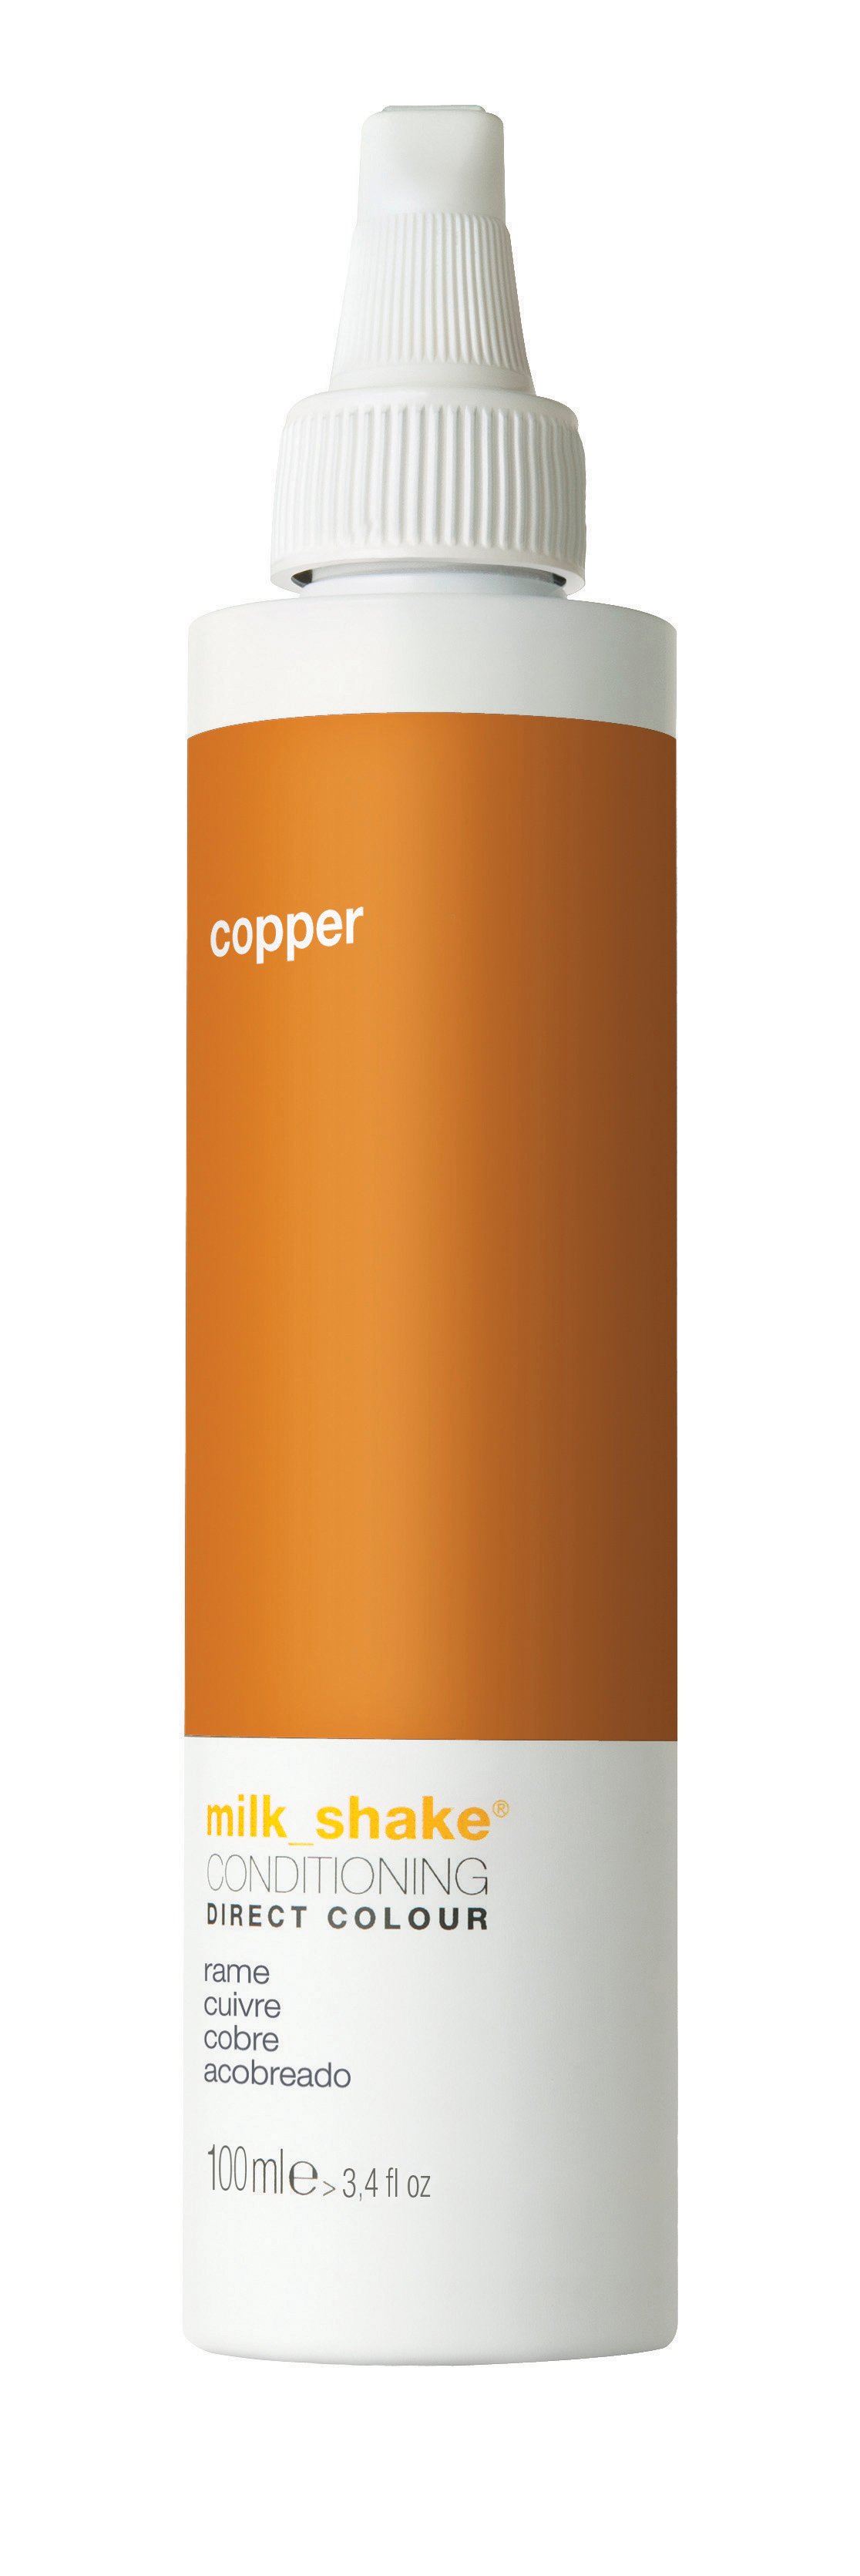 milk_shake - Direct Color 100 ml - Copper - Skjønnhet